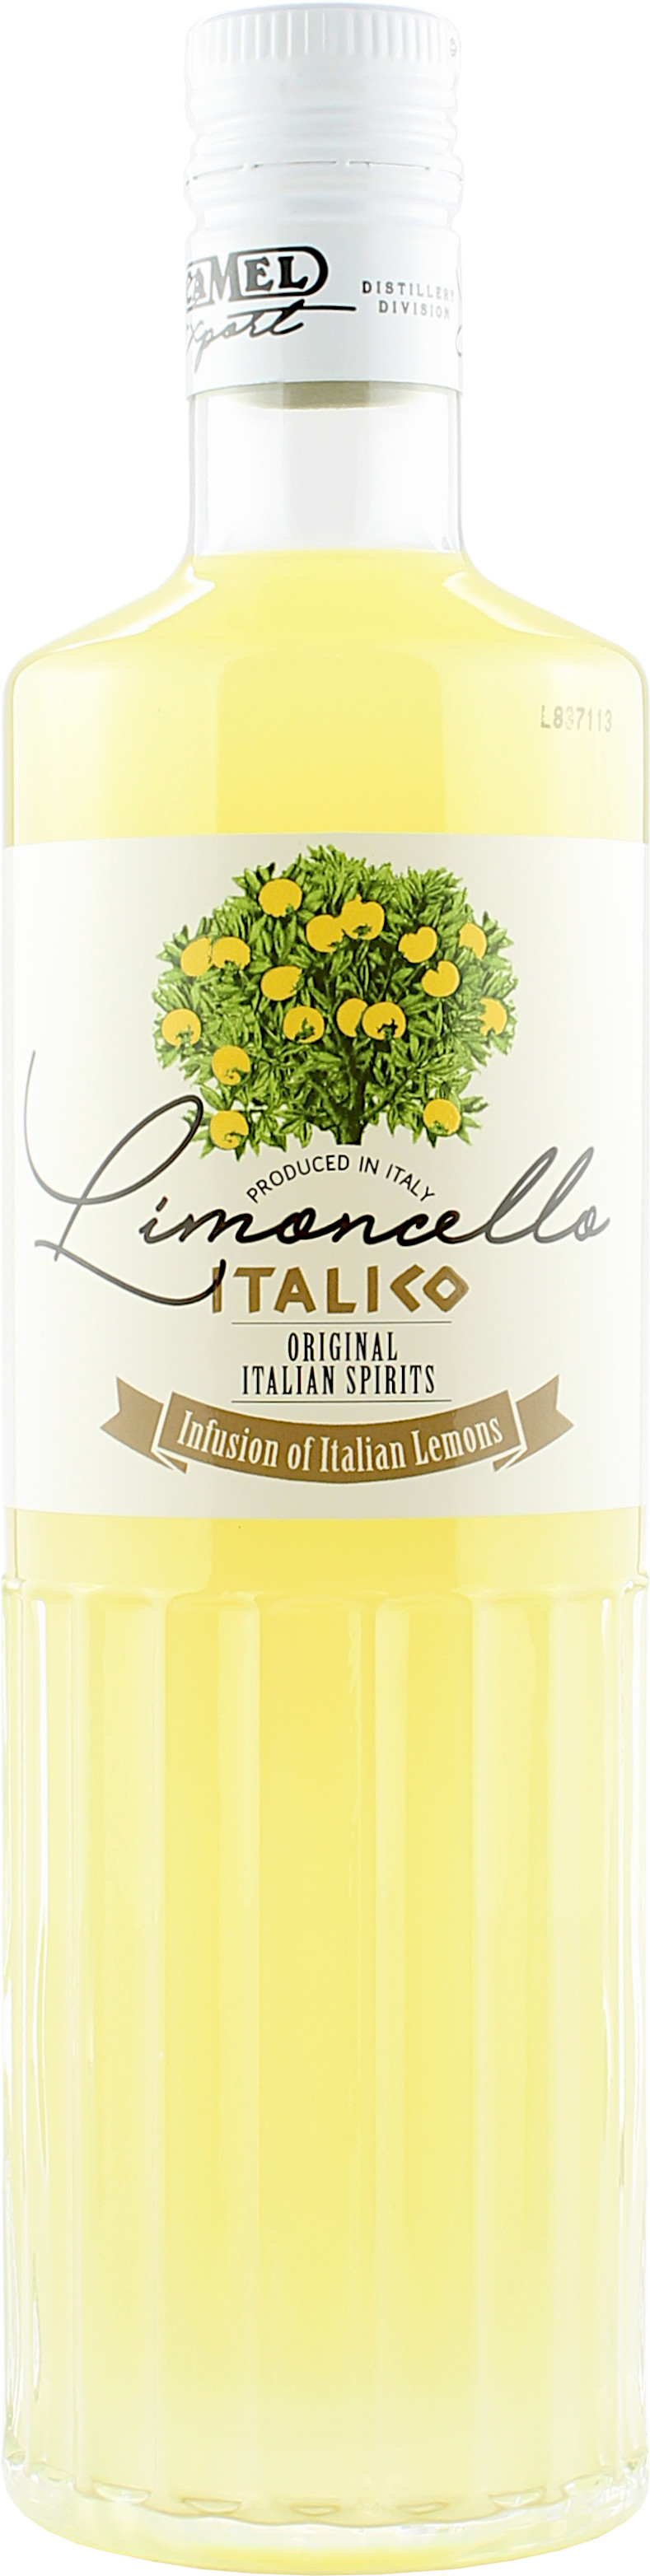 Camel Limoncello Italico 28.0% 0,7l